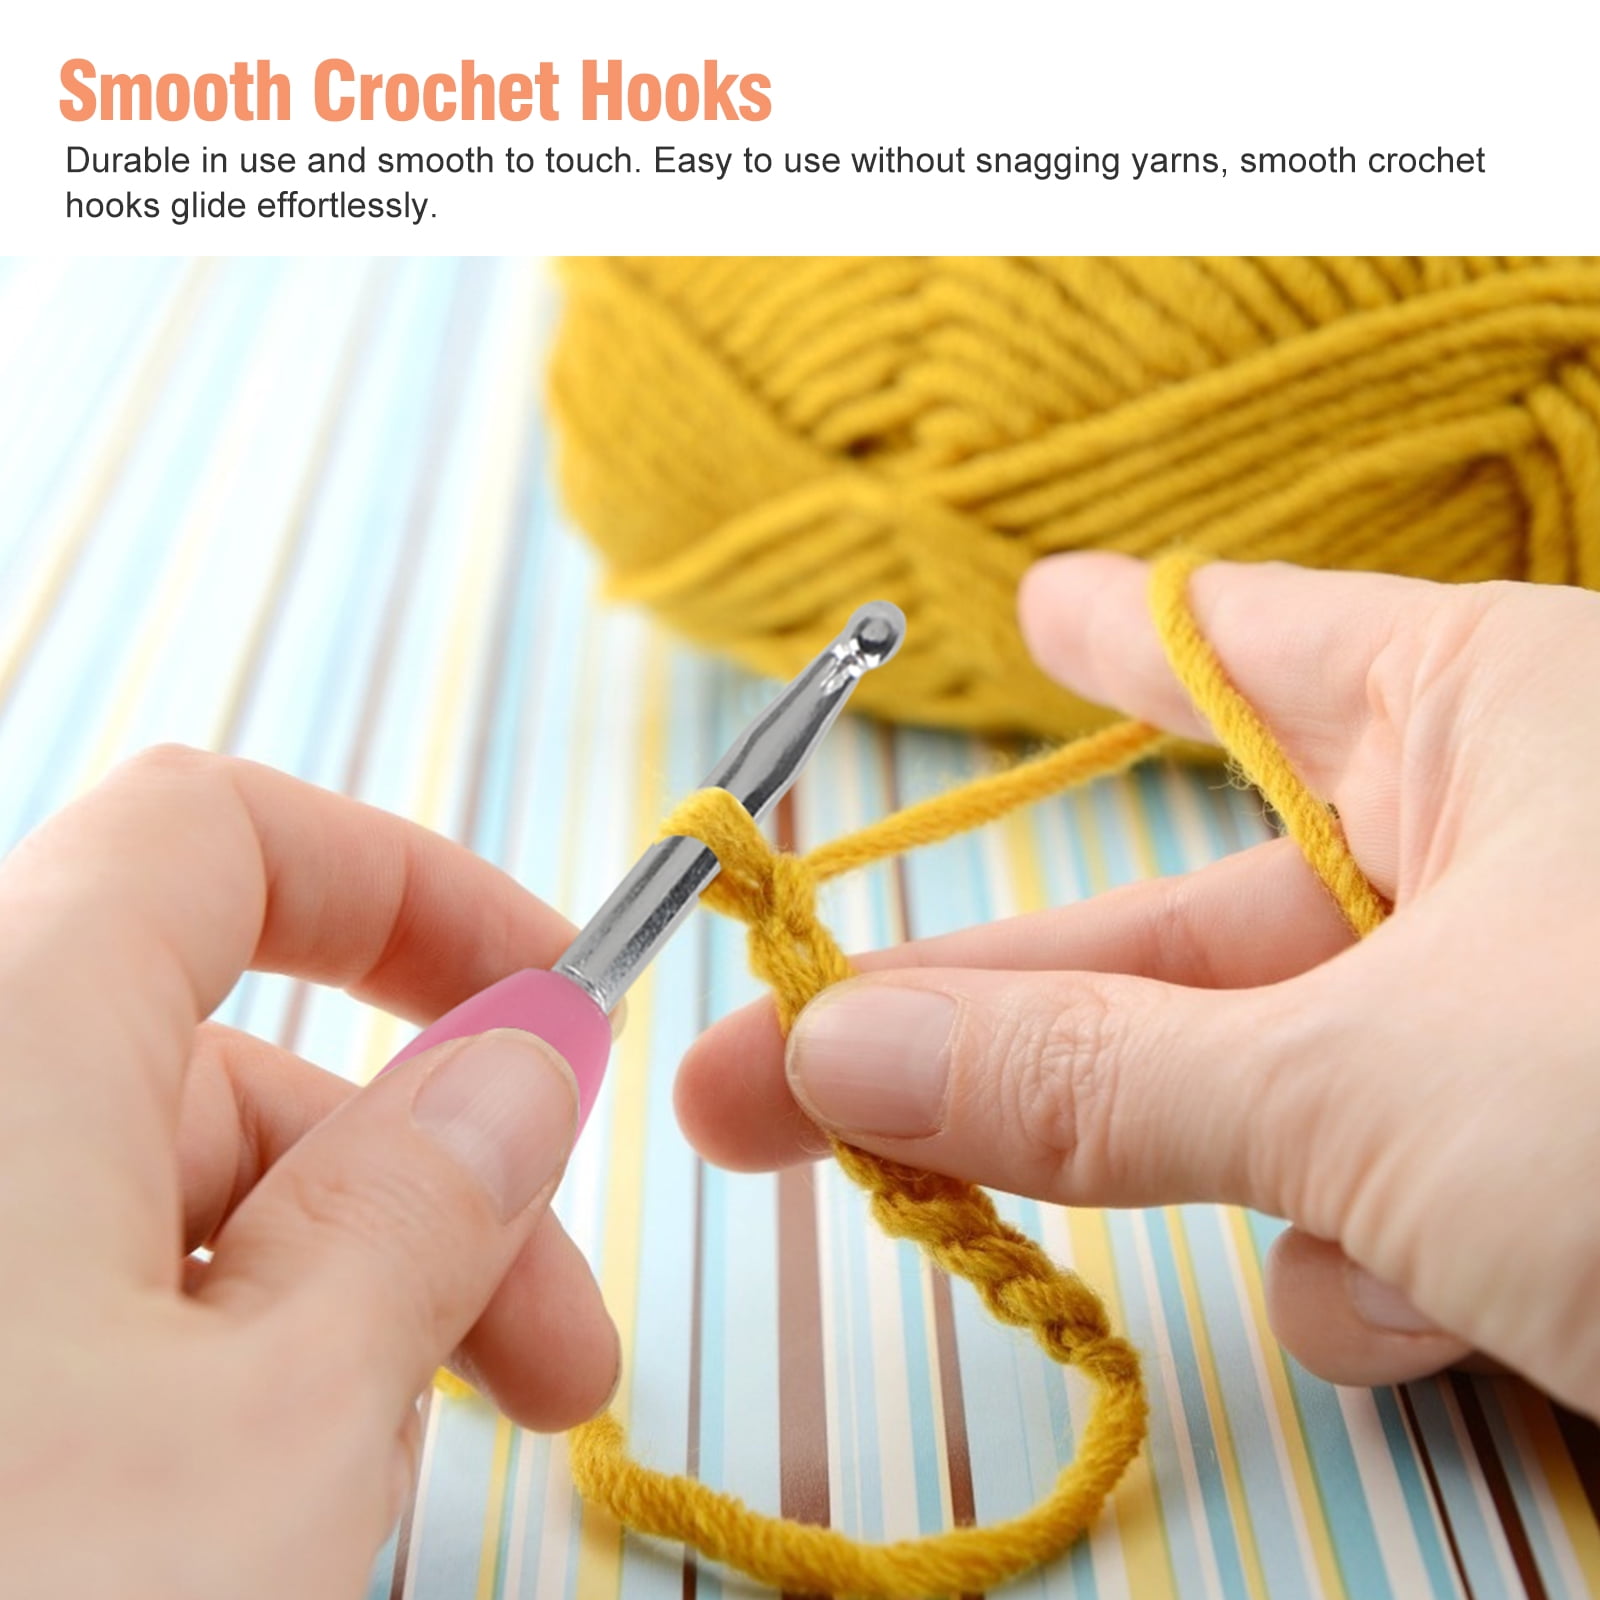 Latest Multicolor Aluminum Crochet Hooks Set for Crocheting,Crochet Handles  Engraved US Letter and Number Size B/2.25mm-N/10mm,Crochet Needles for